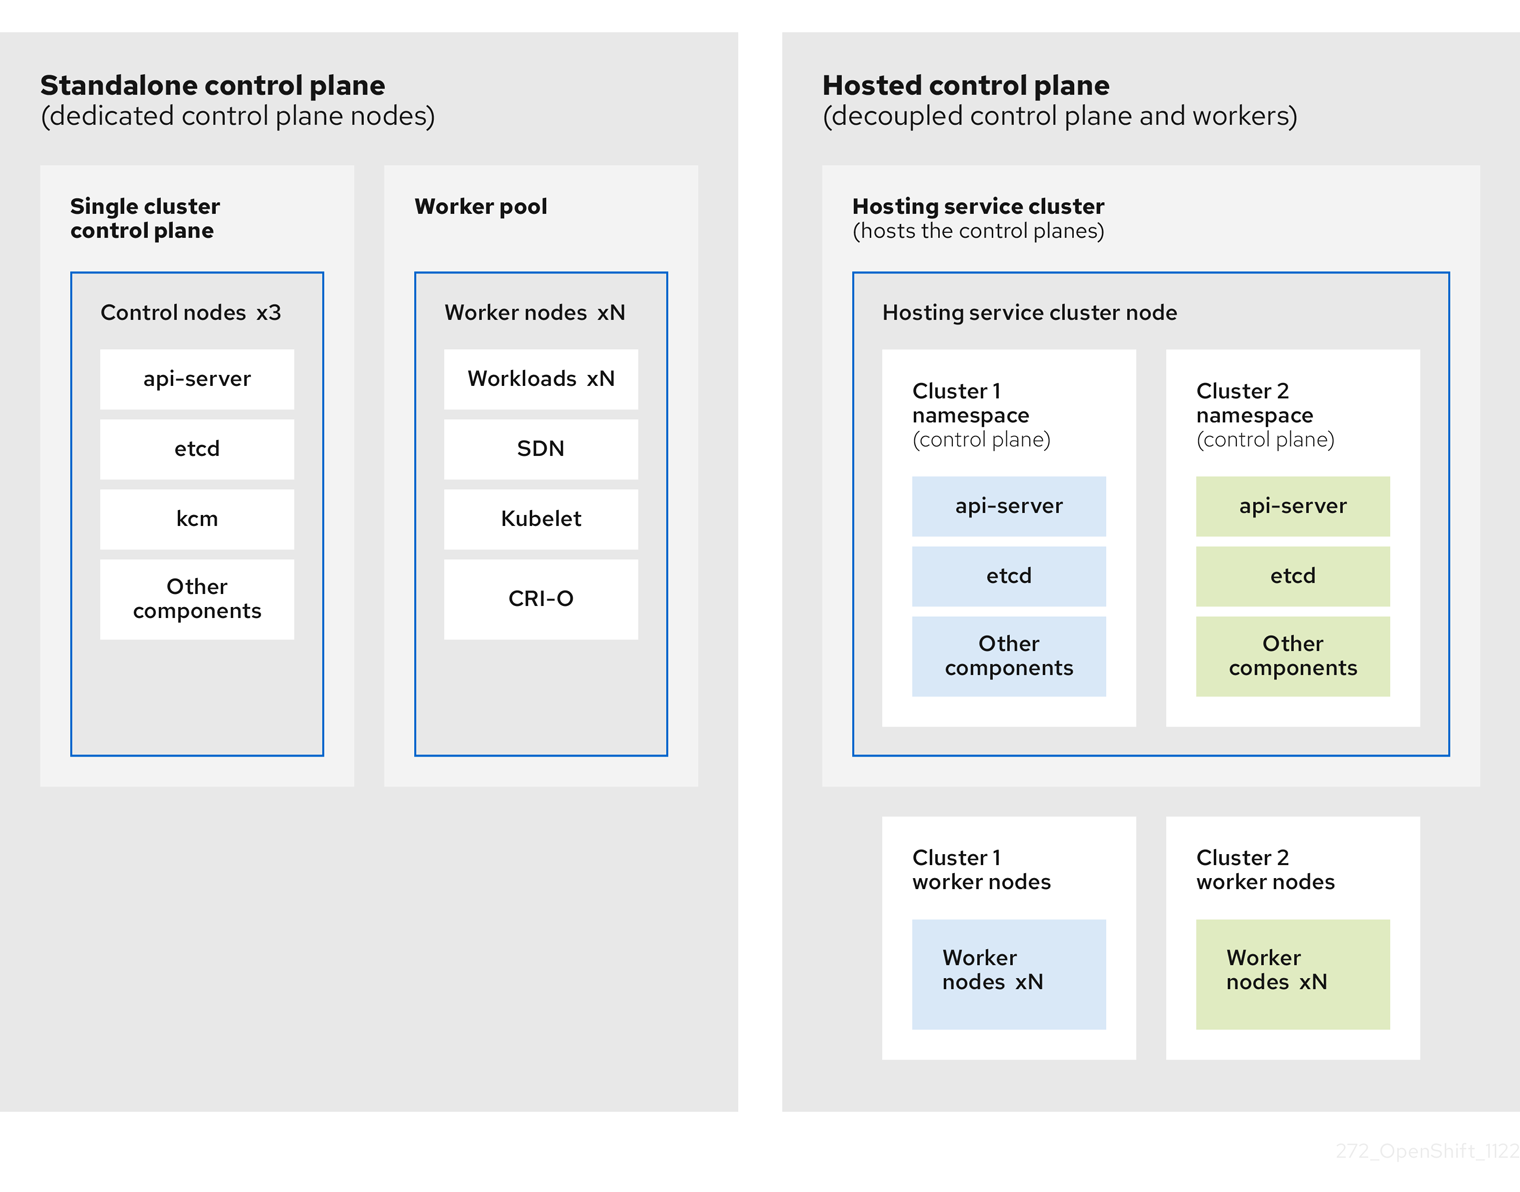 ホストされたコントロールプレーンモデルと、コントロールプレーンとワーカーが結合された OpenShift を比較する図